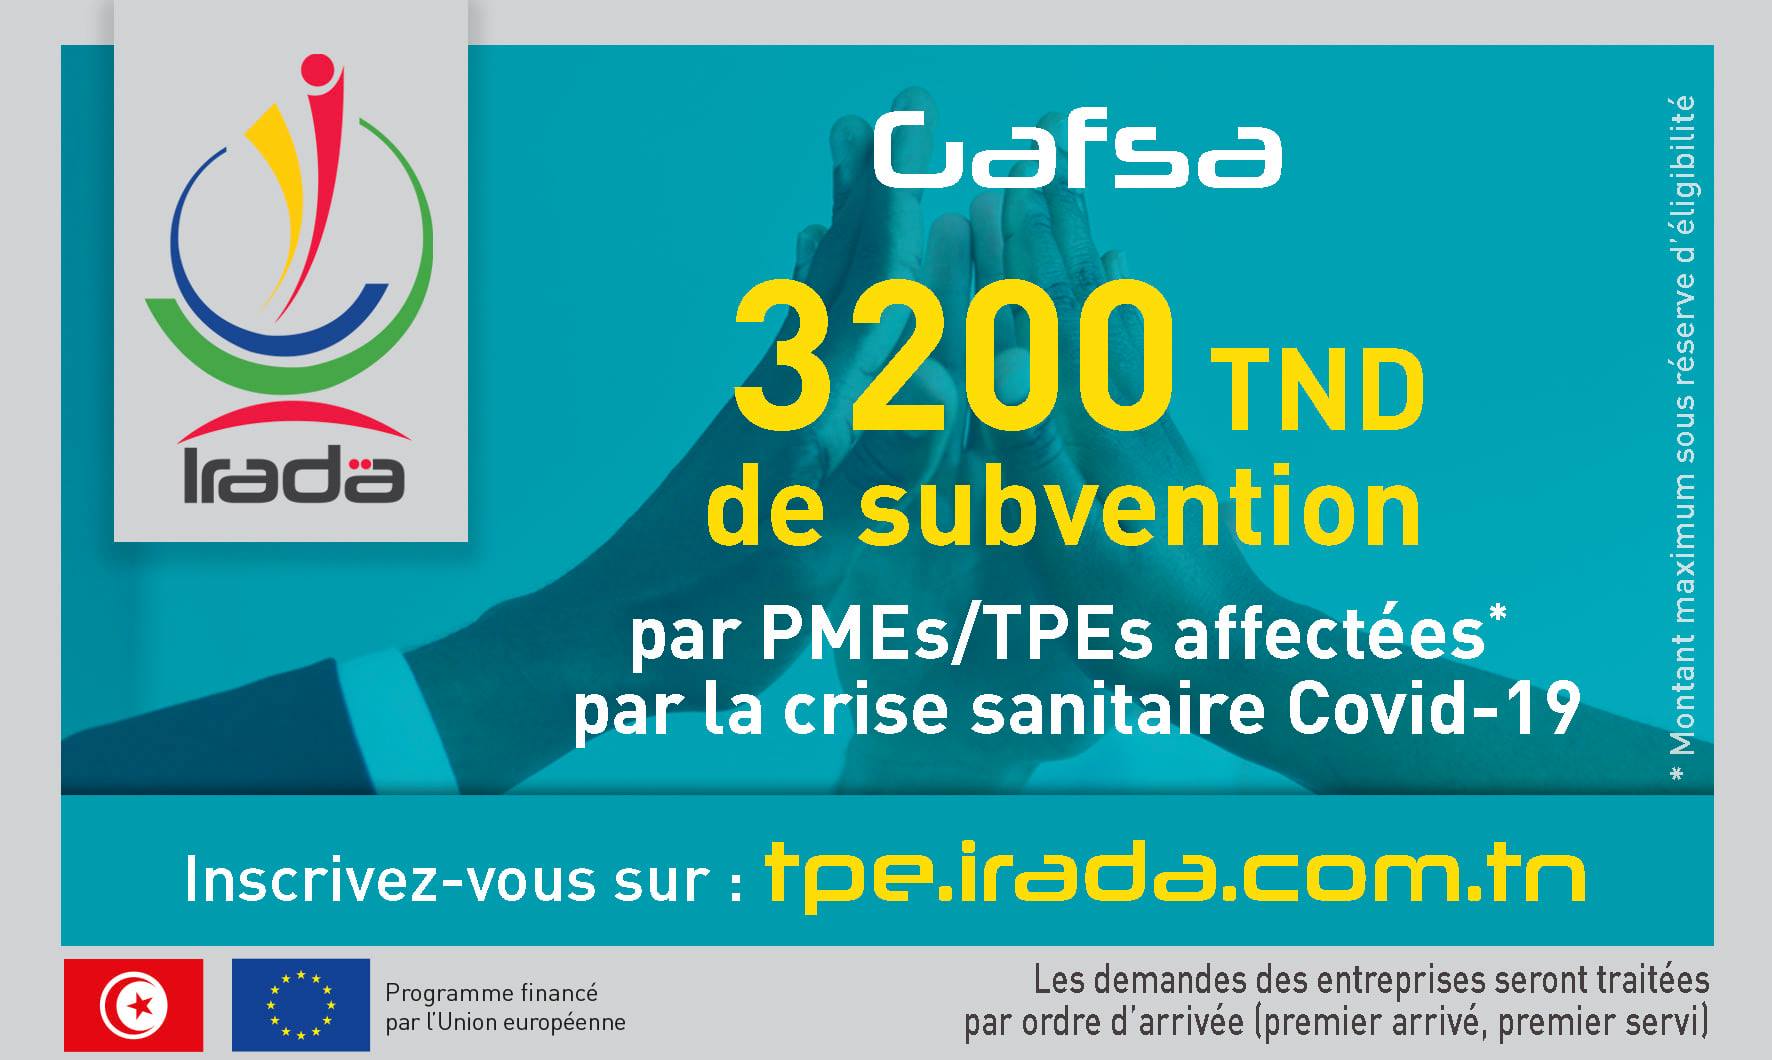 Avis aux PMEs/TPEs de la région de Gafsa - Covid19 : Octroi de soutien financier